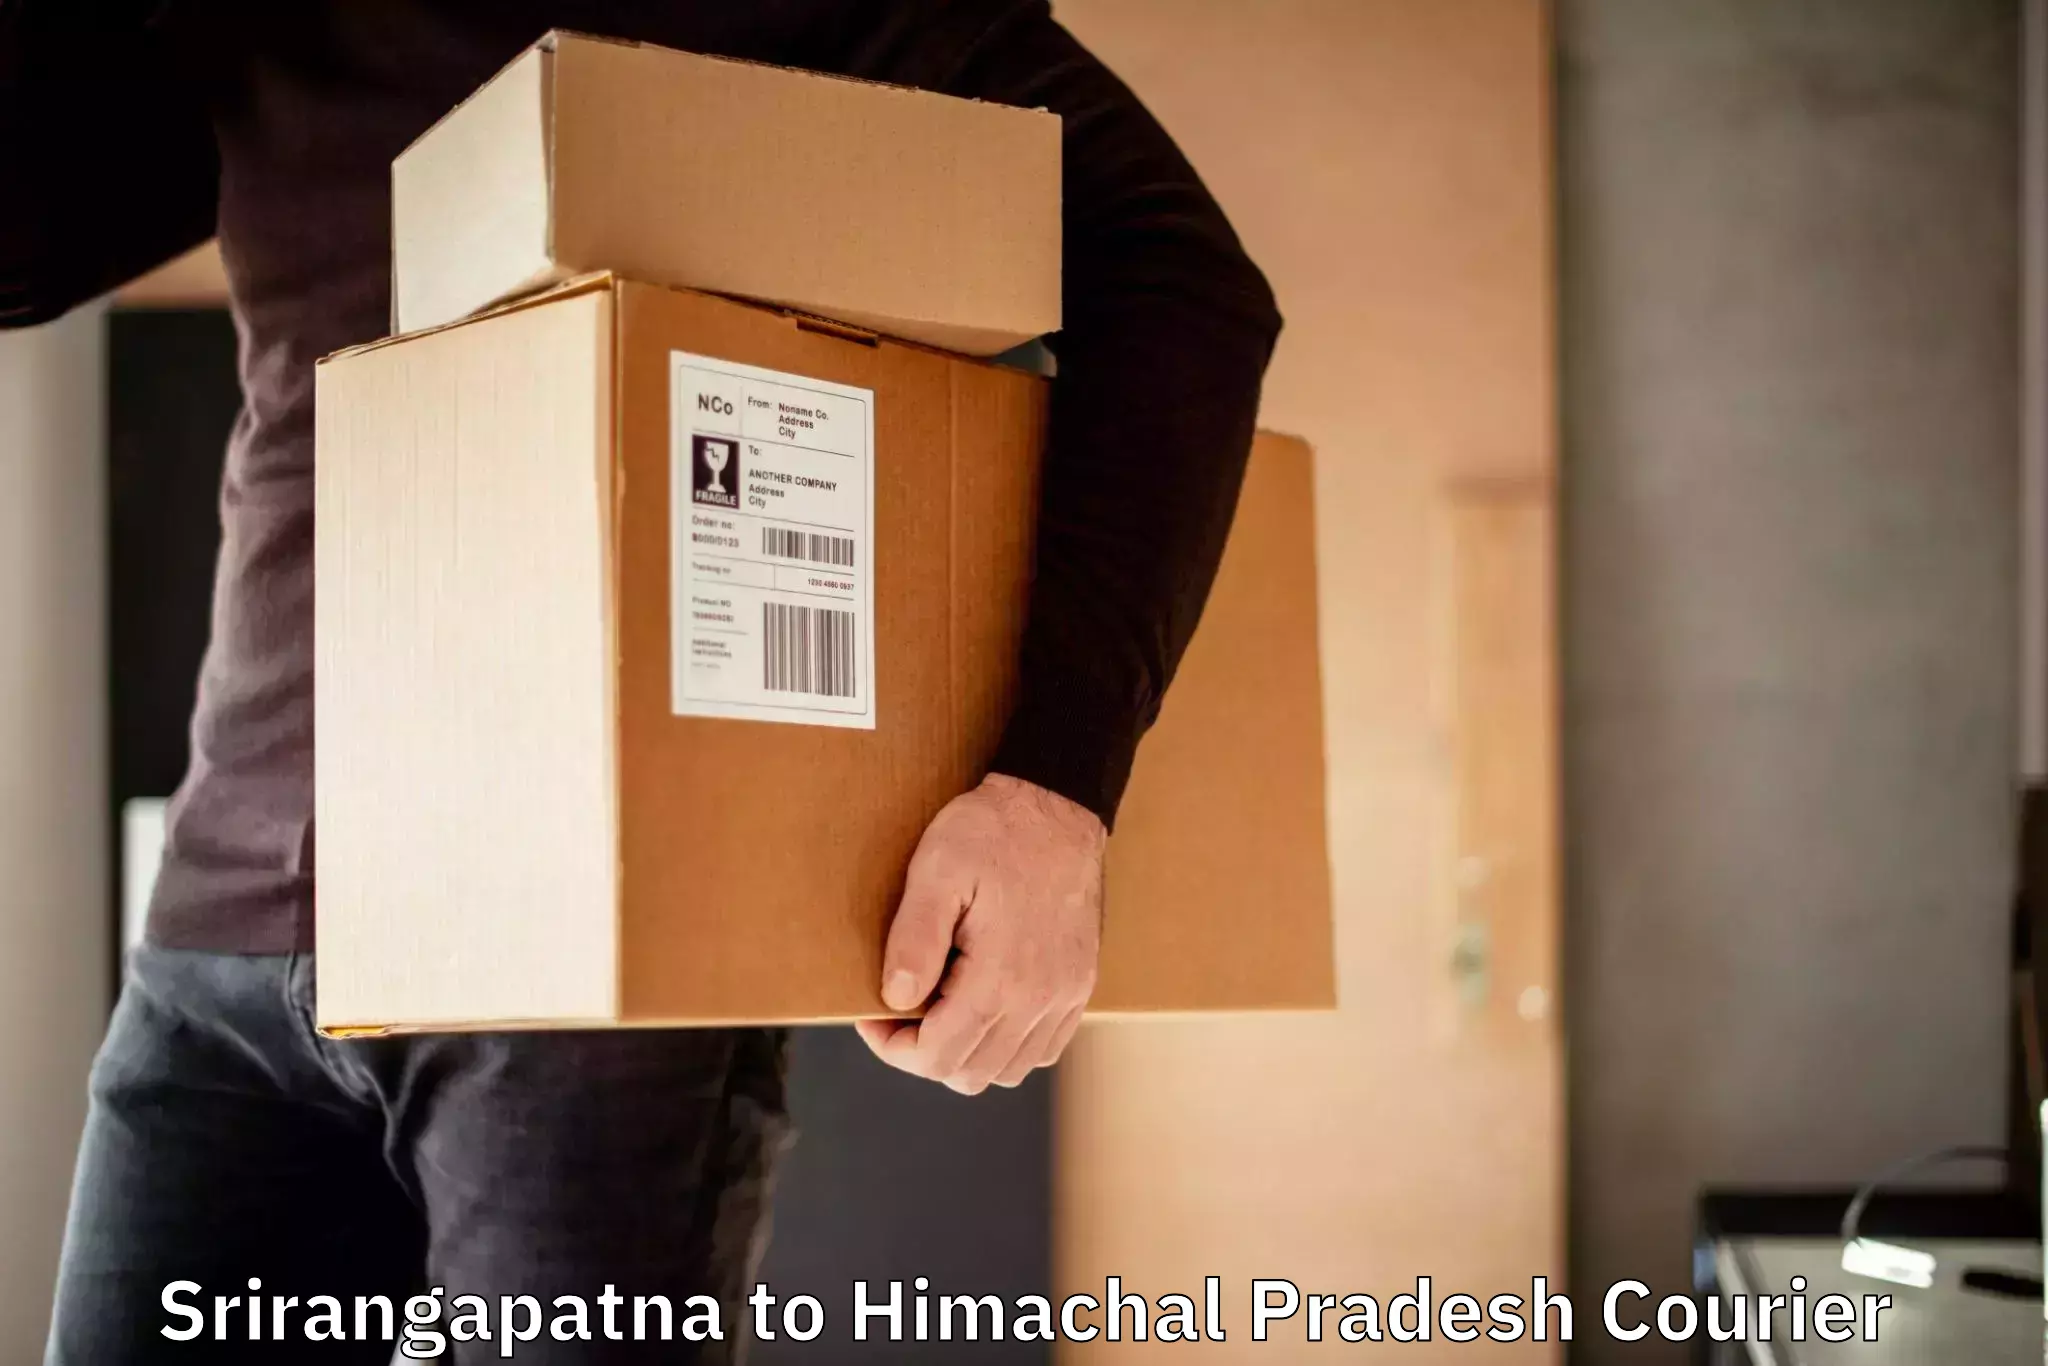 Multi-service courier options in Srirangapatna to Una Himachal Pradesh